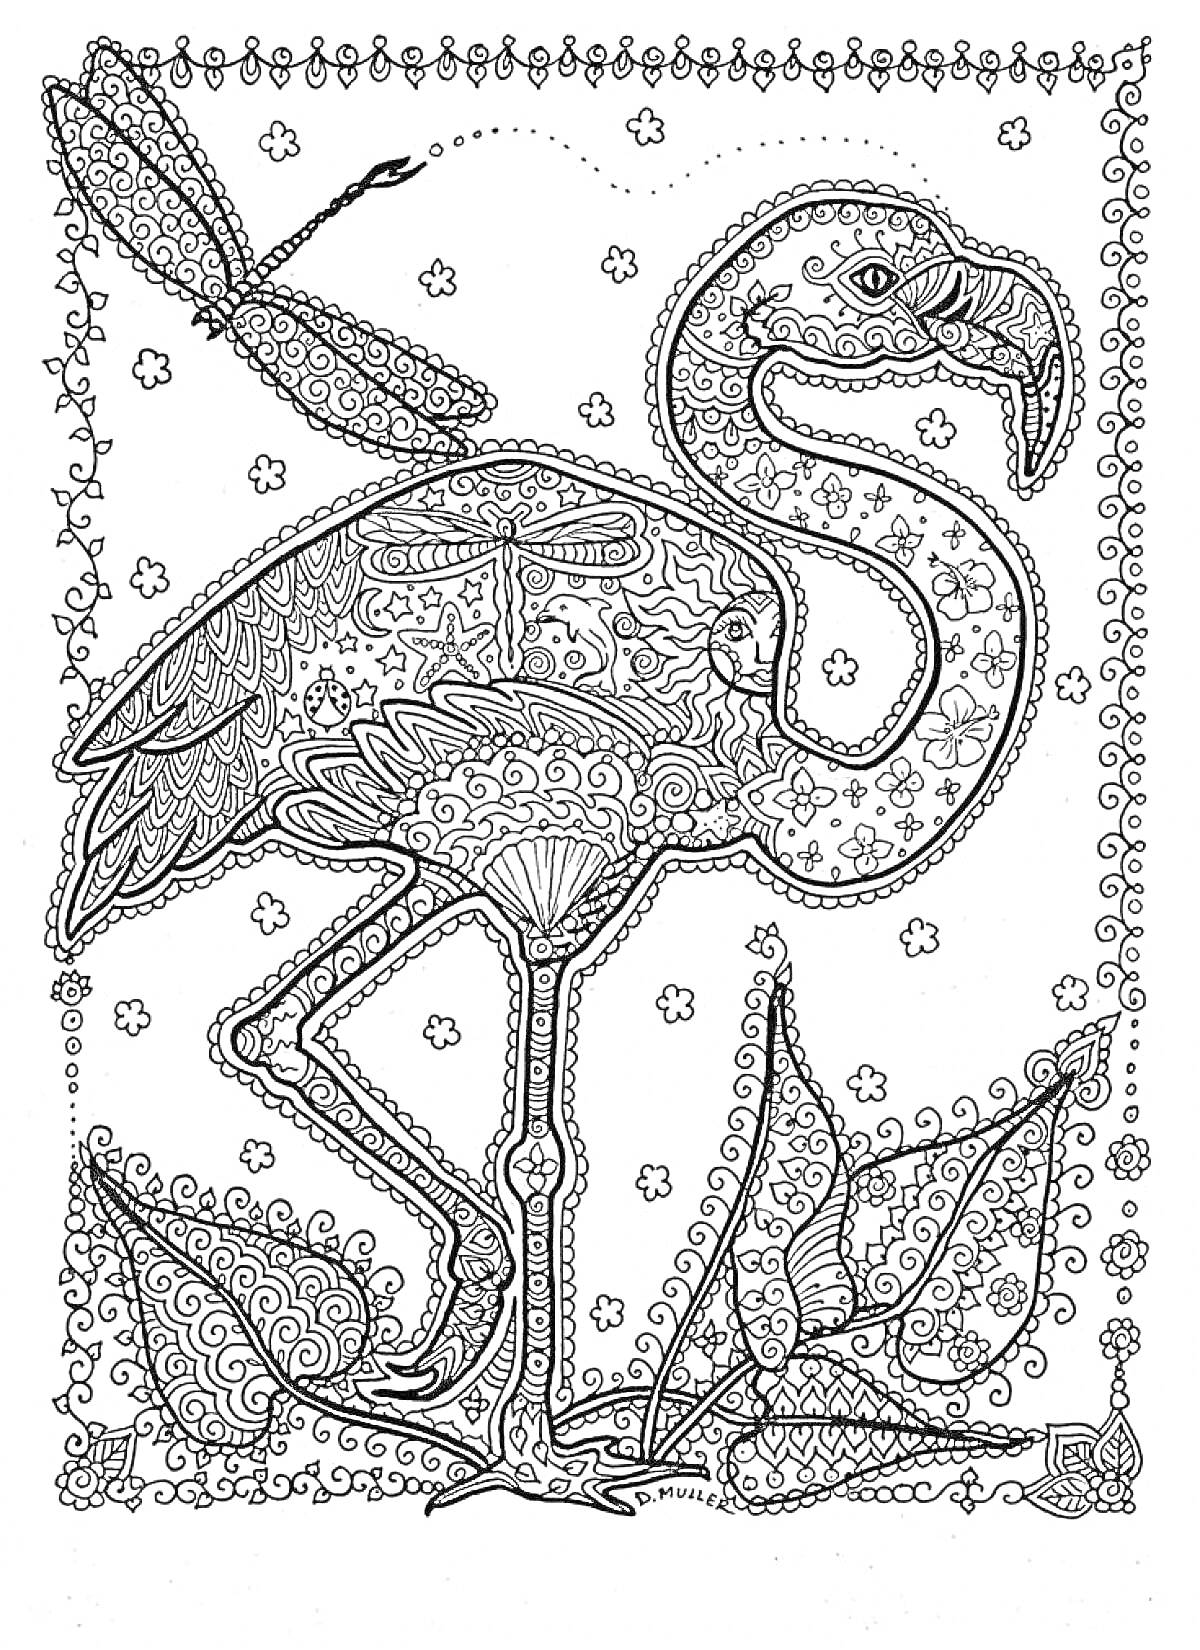 Антистресс раскраска с фламинго, змеёй, стрекозой, цветами, узорами и декоративной рамкой